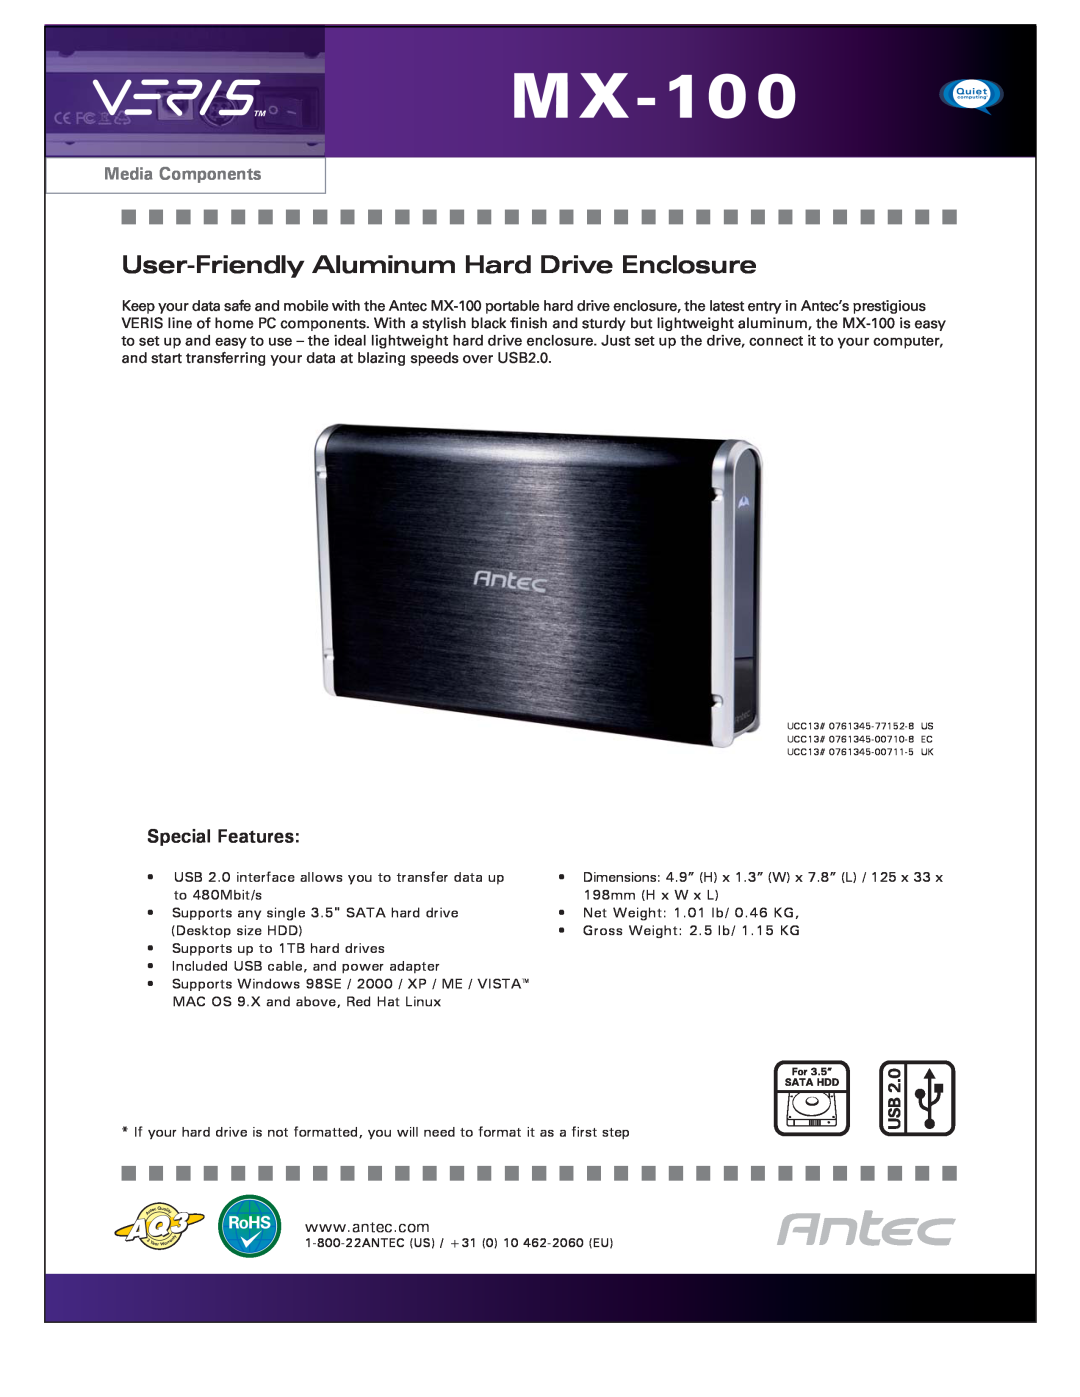 Antec MX-100 dimensions User-Friendly Aluminum Hard Drive Enclosure, Special Features, Media Components 